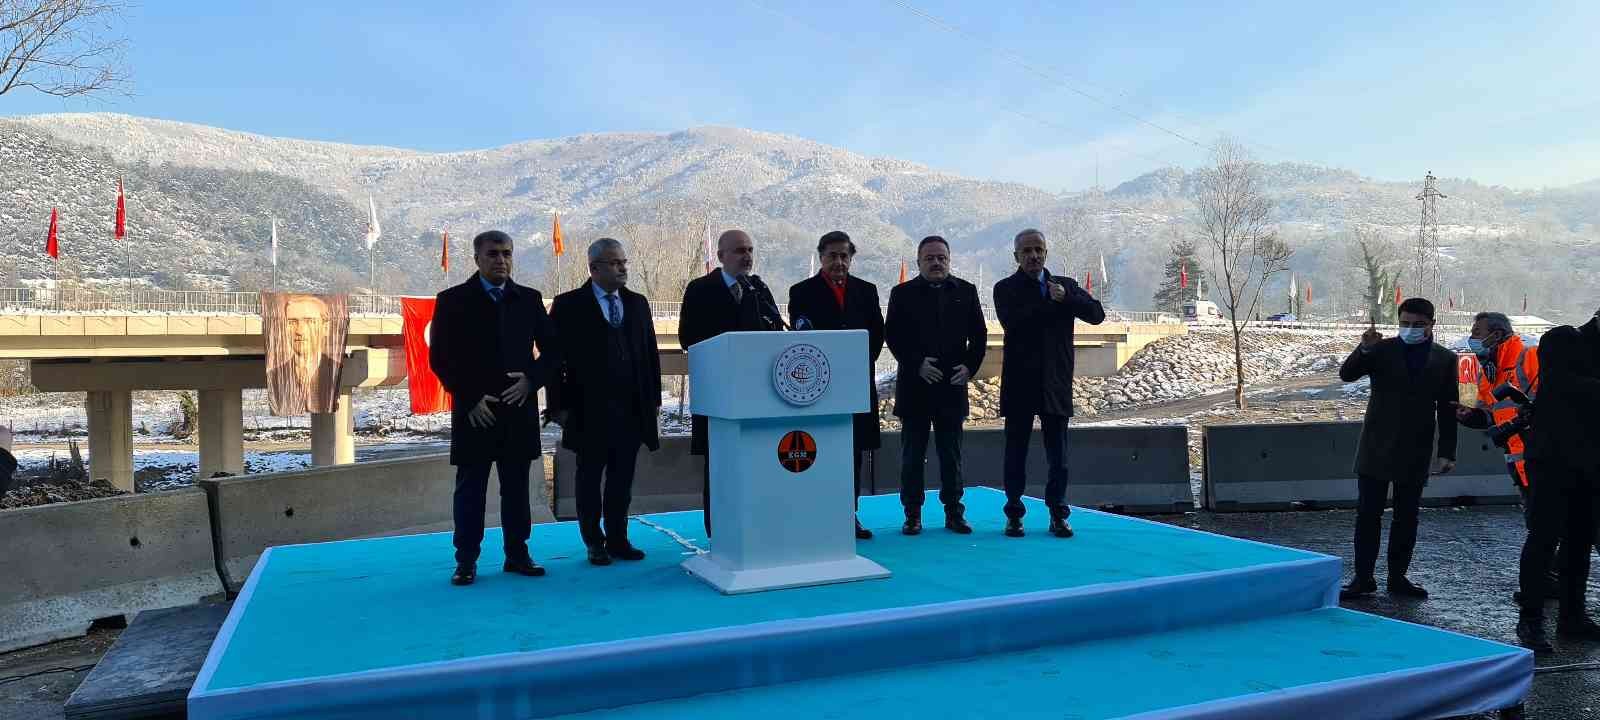 Ulaştırma Bakanı Karaismailoğlu Filyos 5 köprüsünü hizmete açtı #karabuk